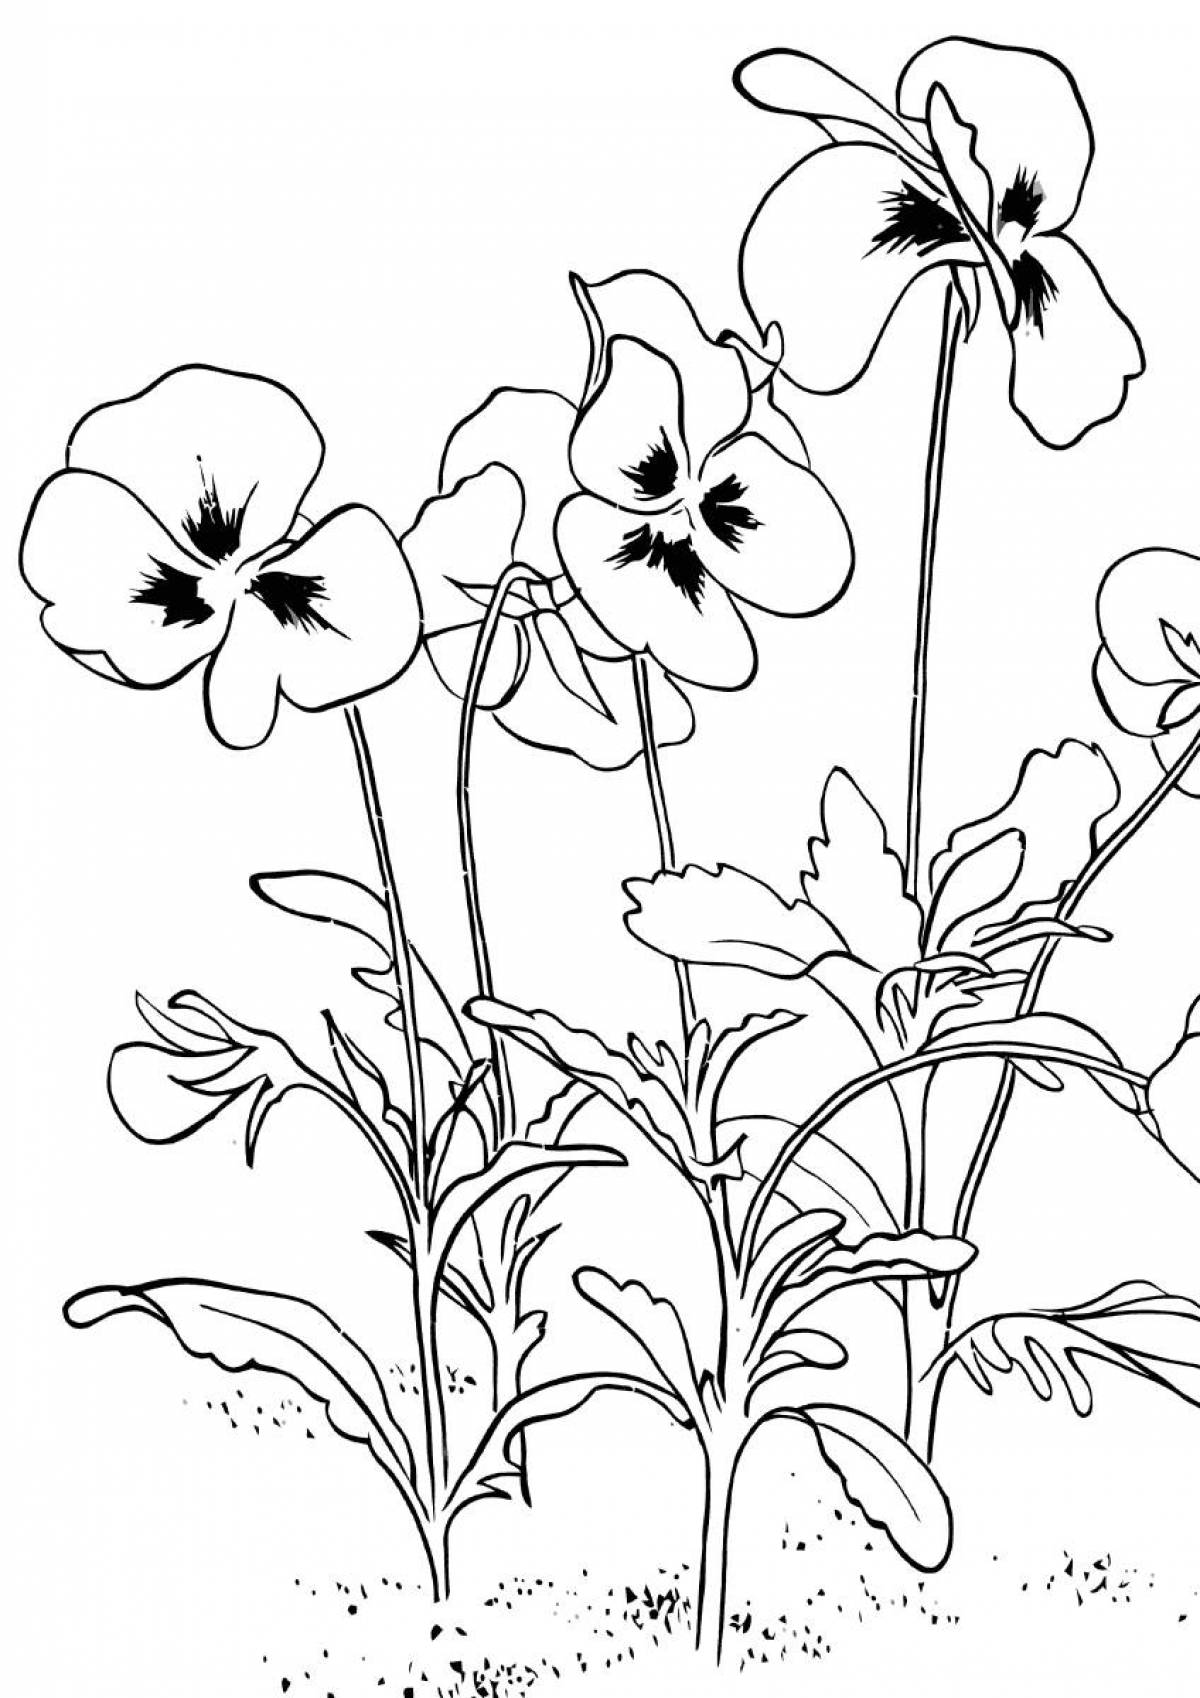 Pansies in the flowerbed